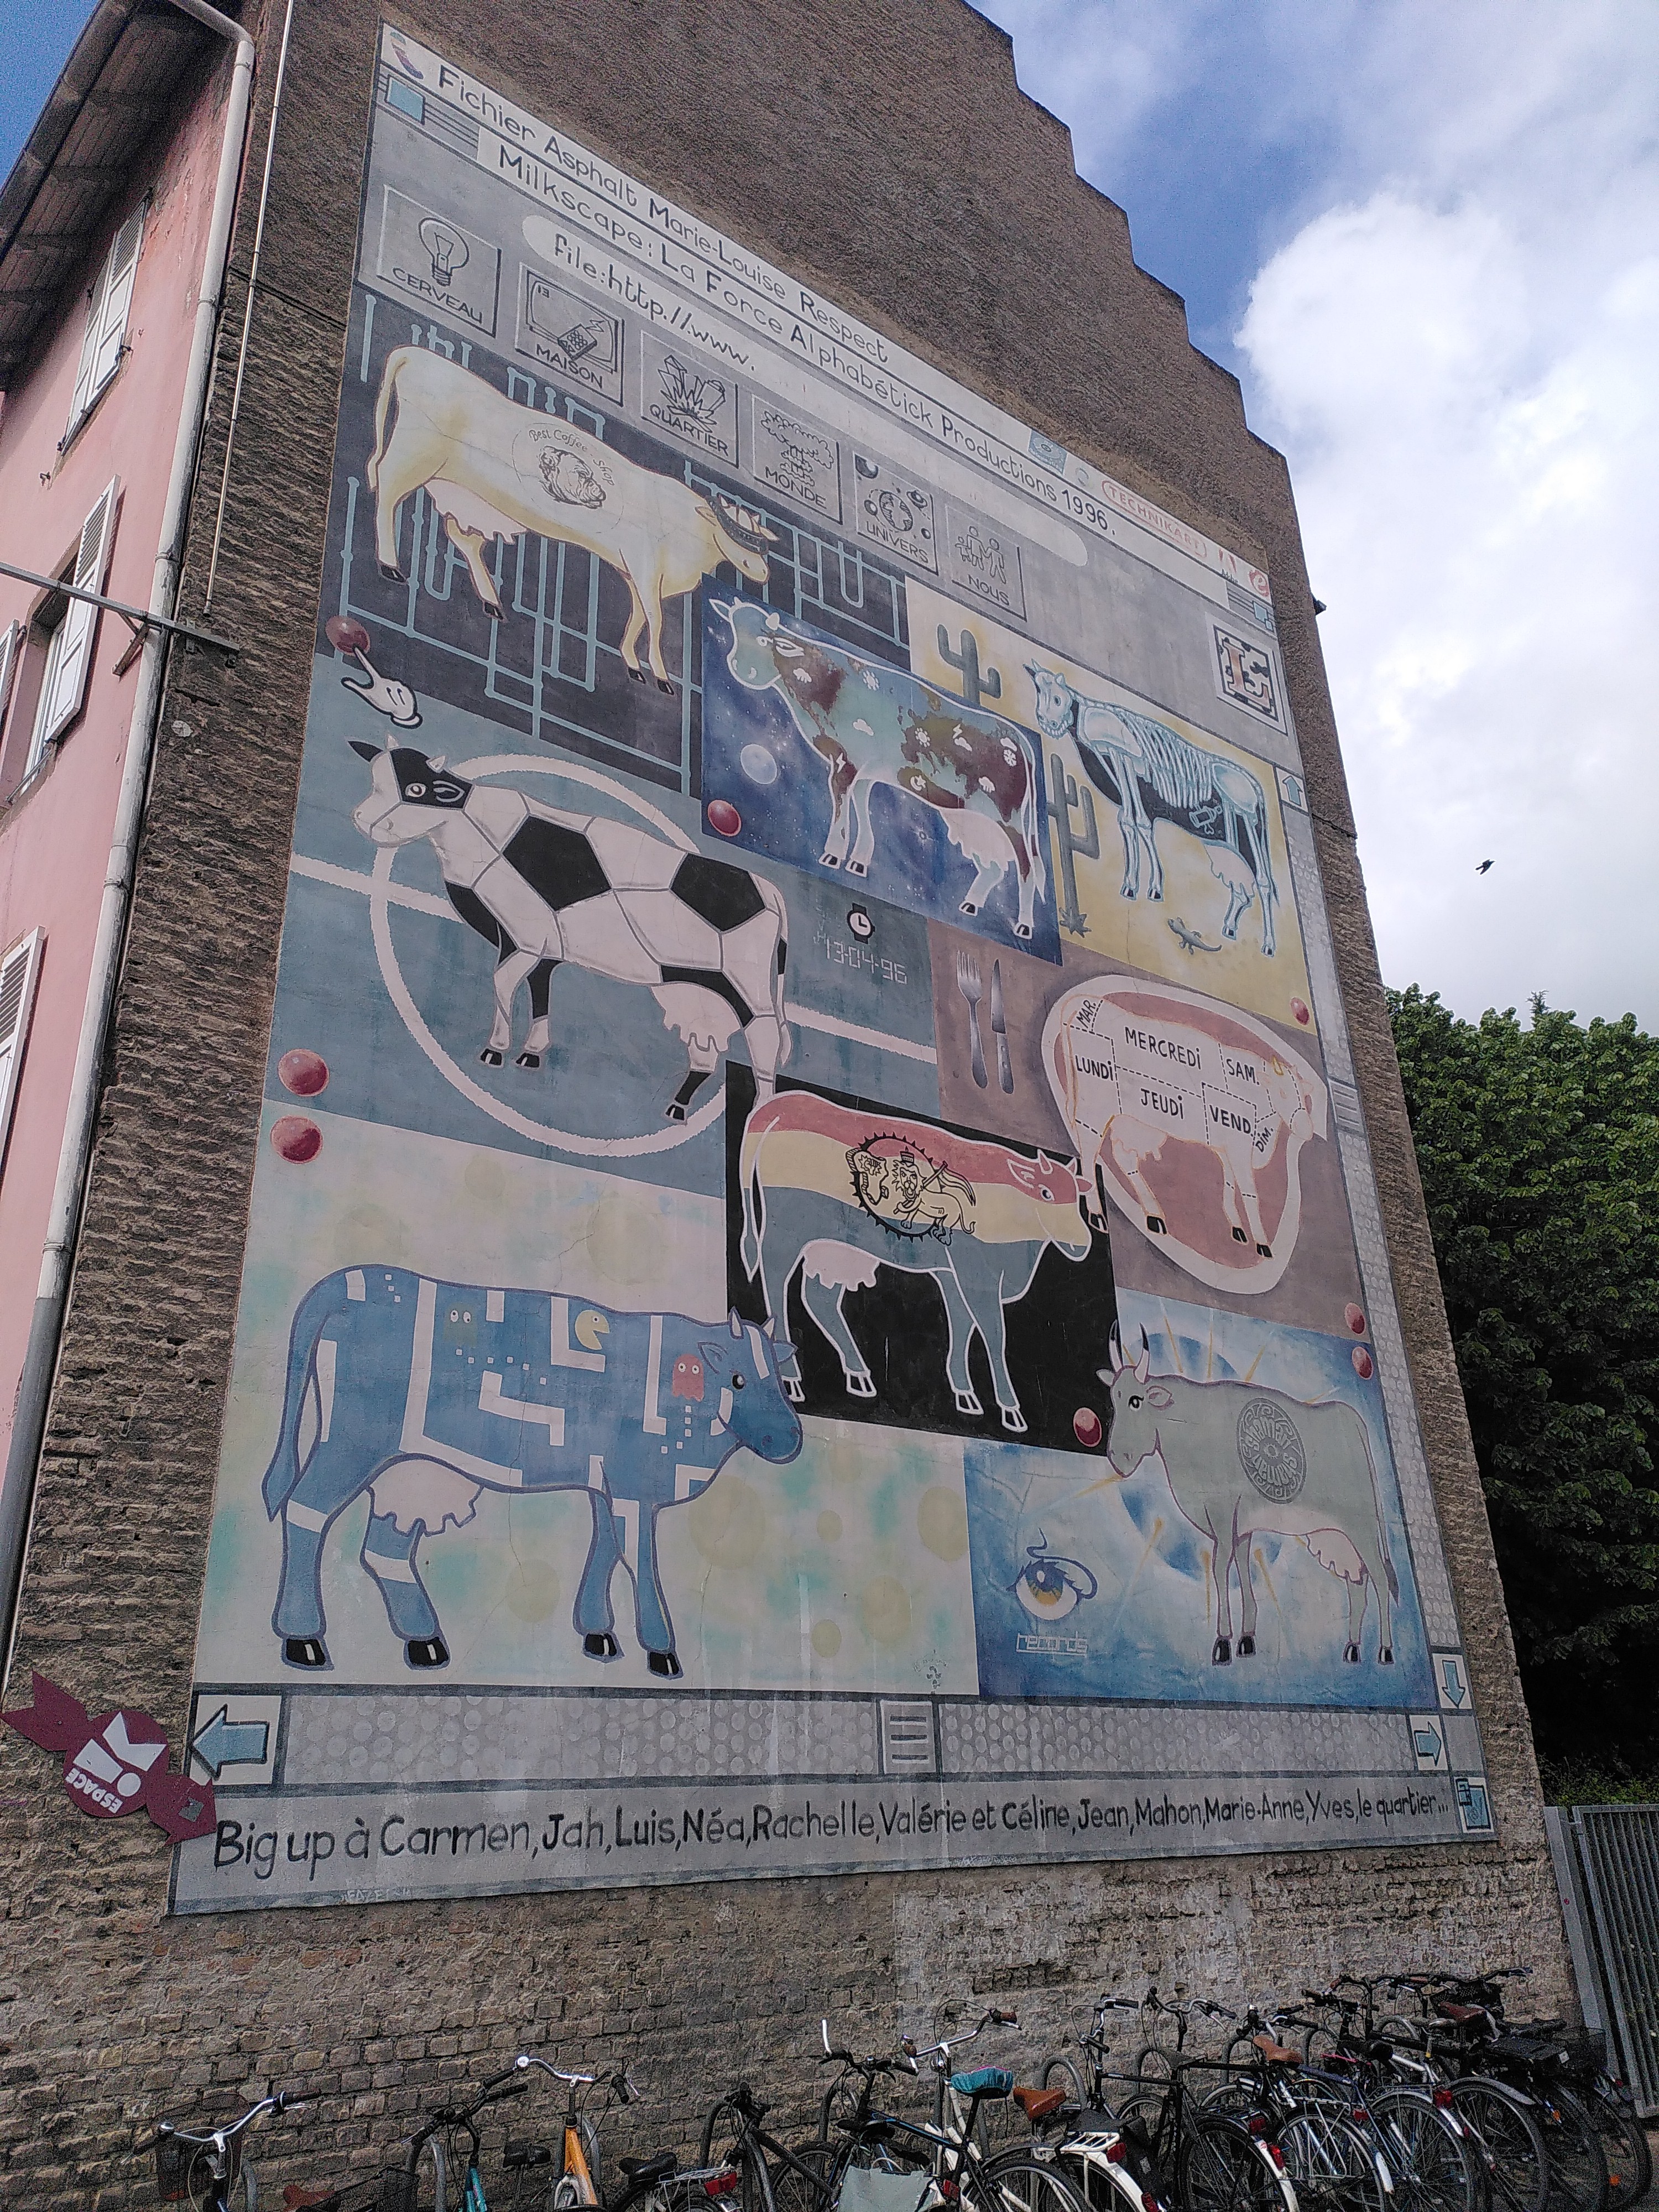 Peinture murale représentant des vaches avec différents attributs culturels